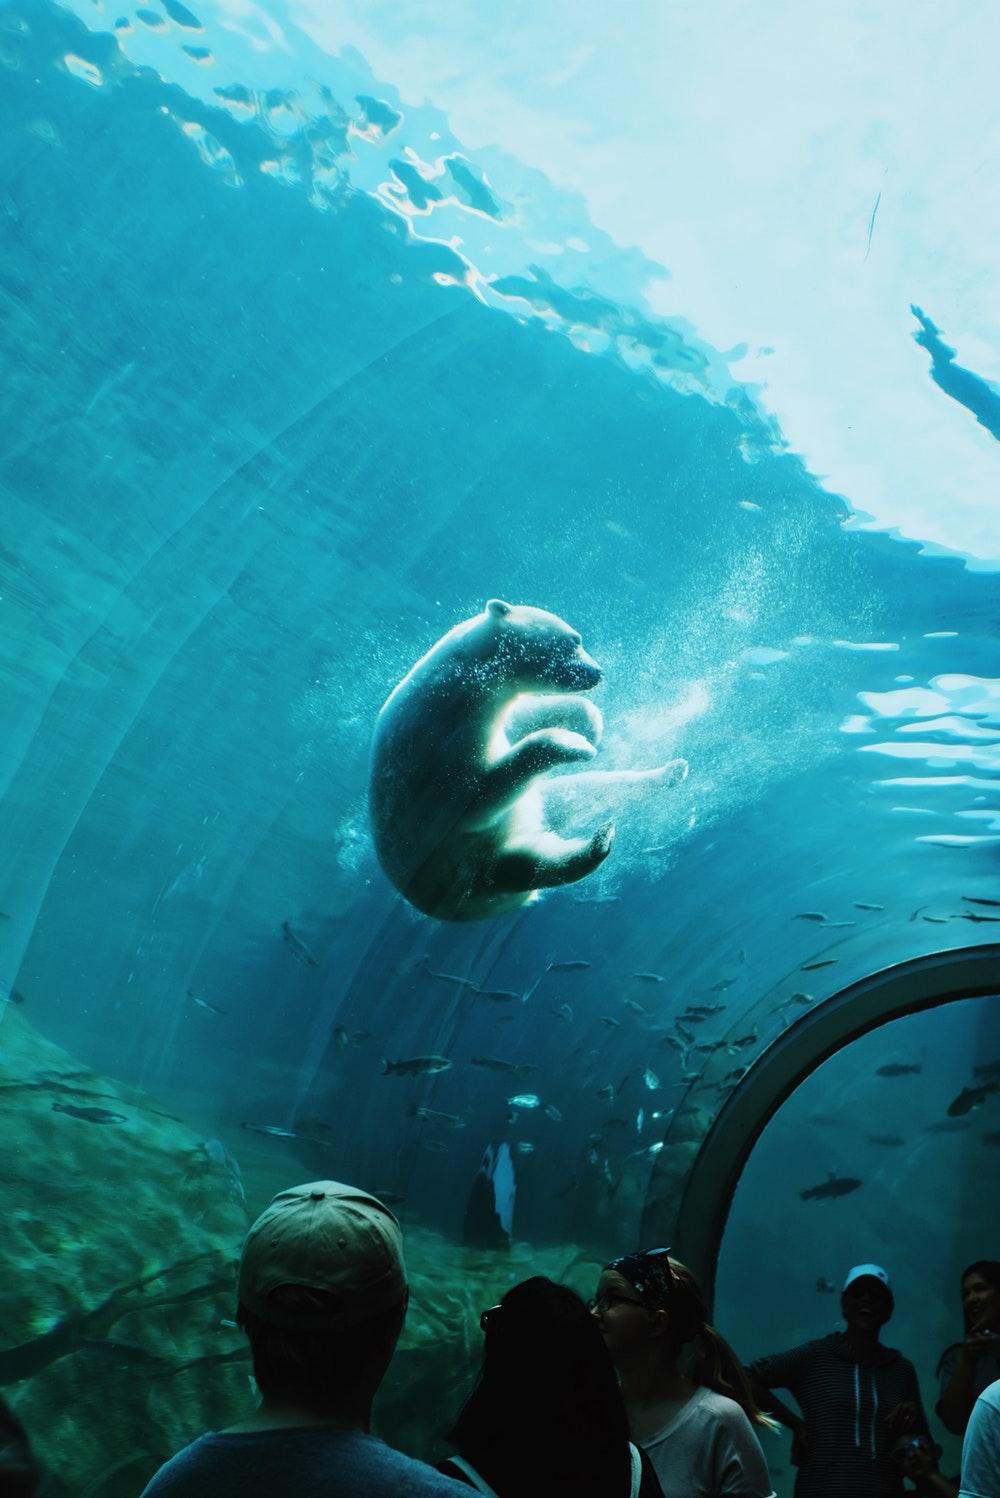 Aquarium Picture [HD]. Download Free Image